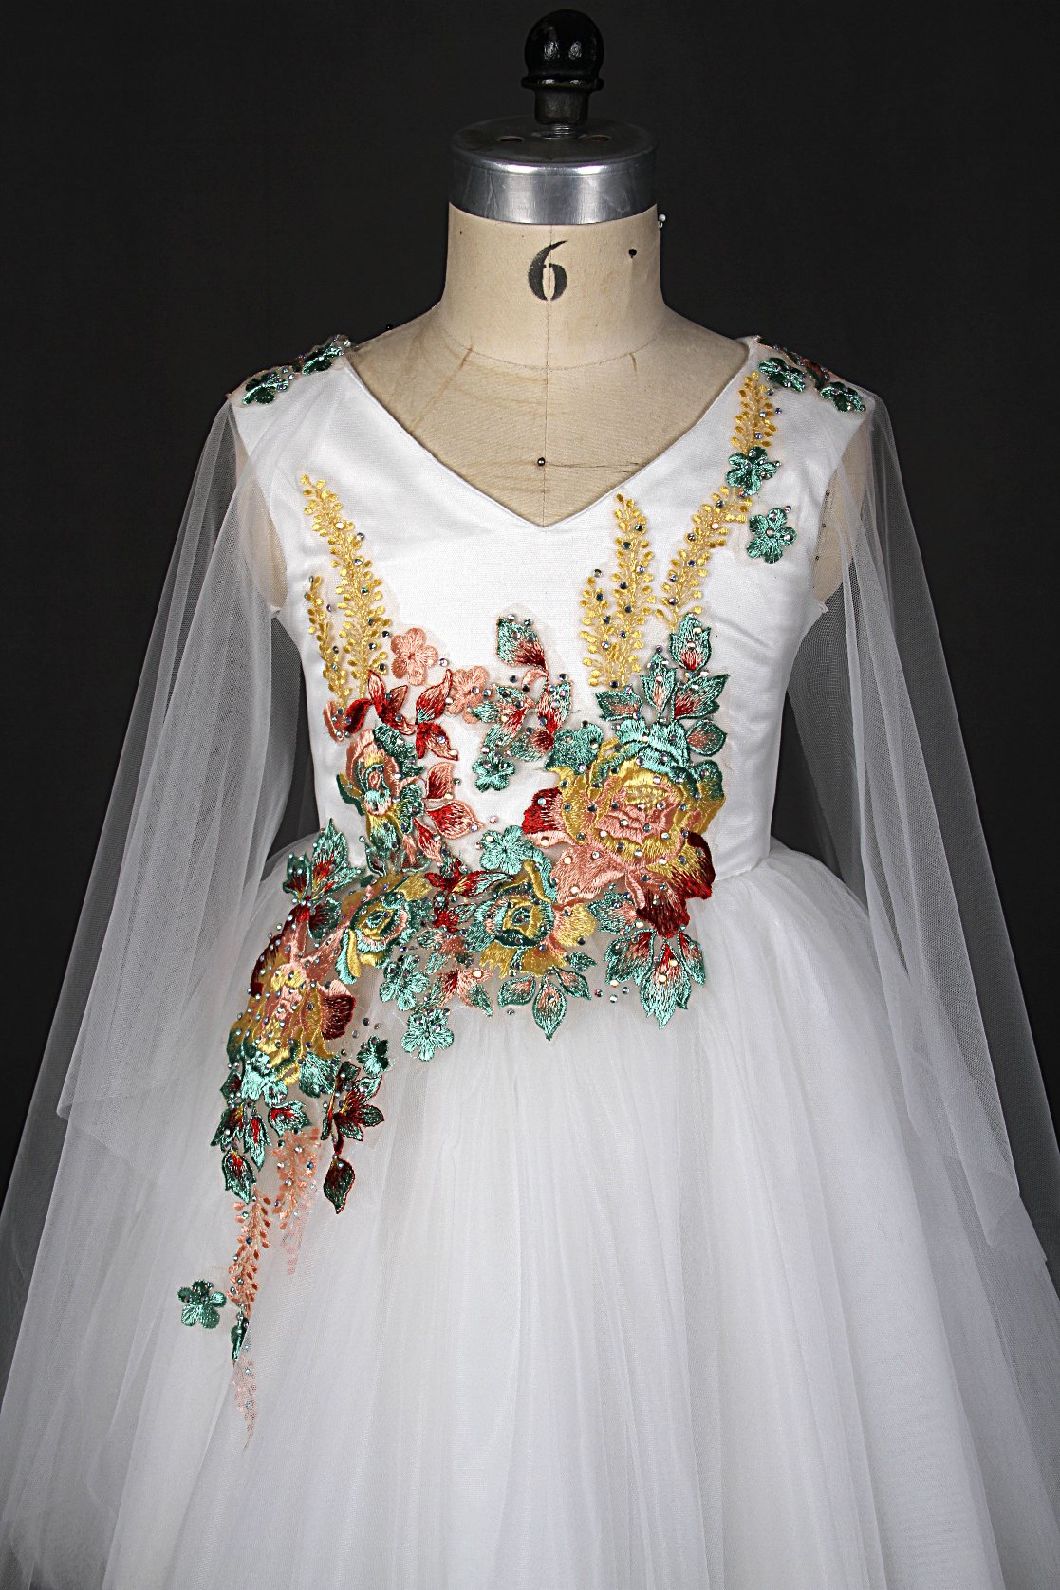 Wholesale Girl Dress for Wedding Flower Girl Dresses